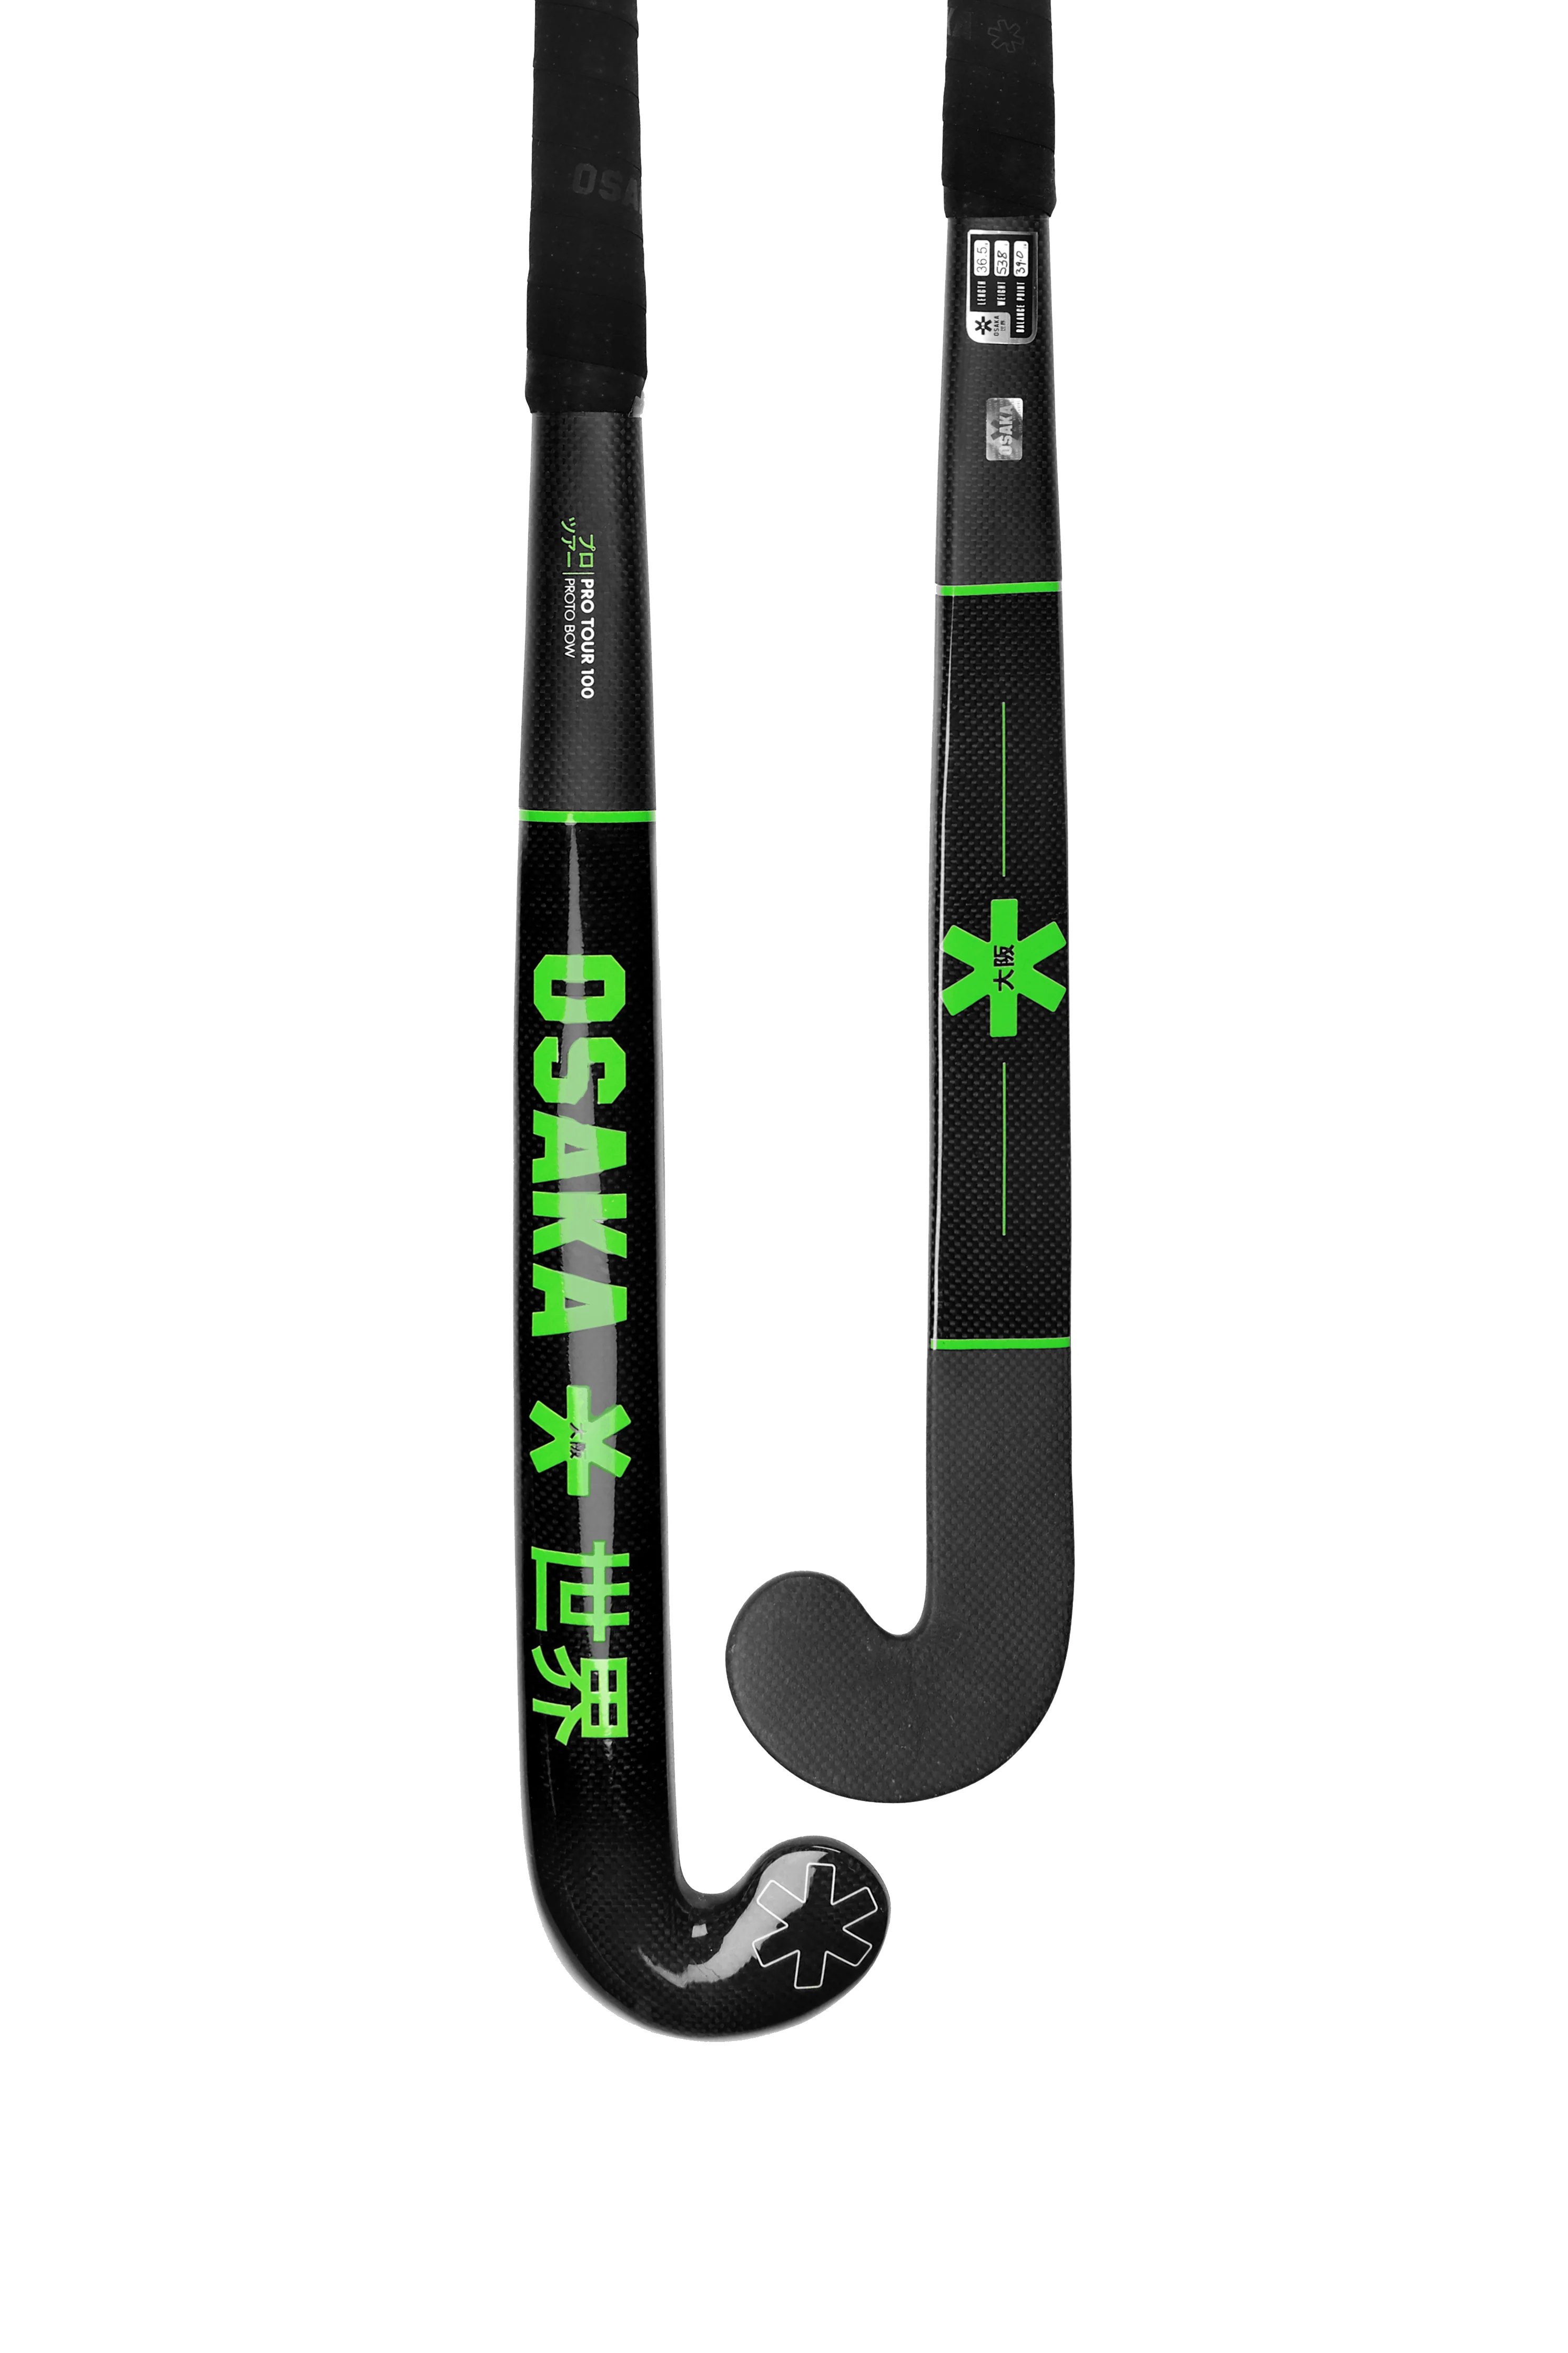 Osaka Pro Tour 100 LoWBow Composite Hockey Stick 2020  SIZE 36.5 AND 37.5  - $199.00